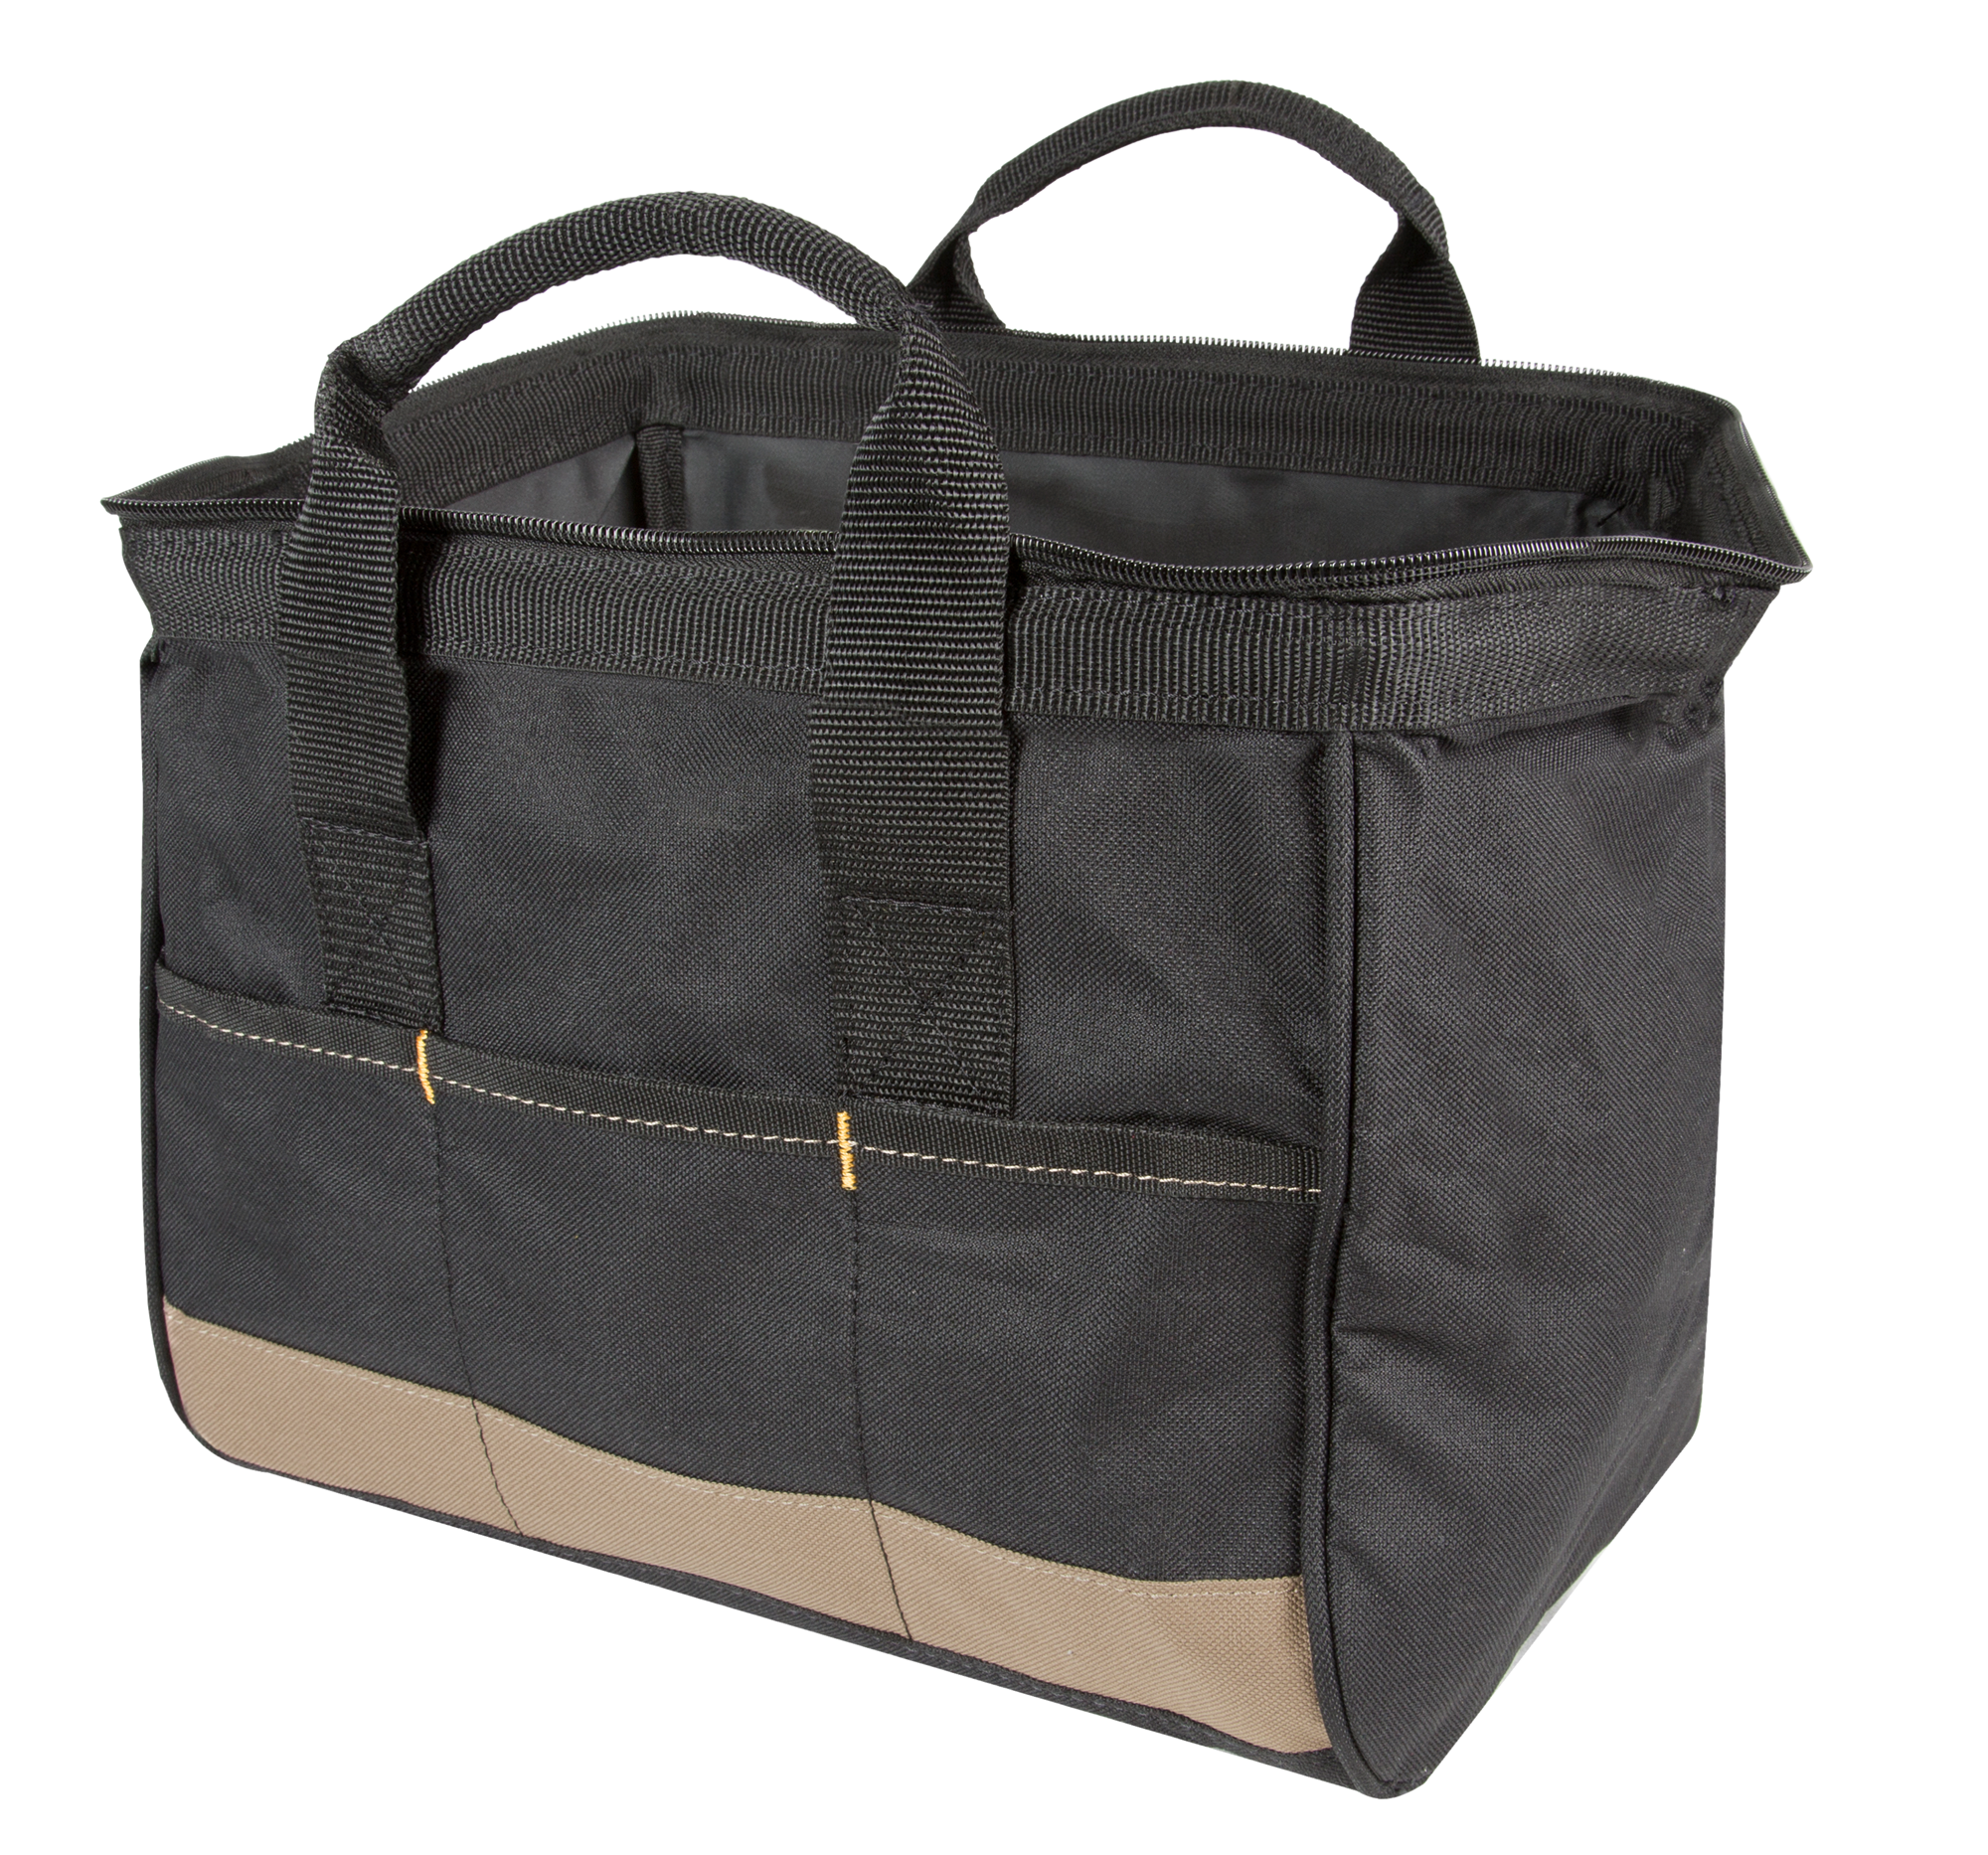 CLC BigMouth® Tote Bag, Small